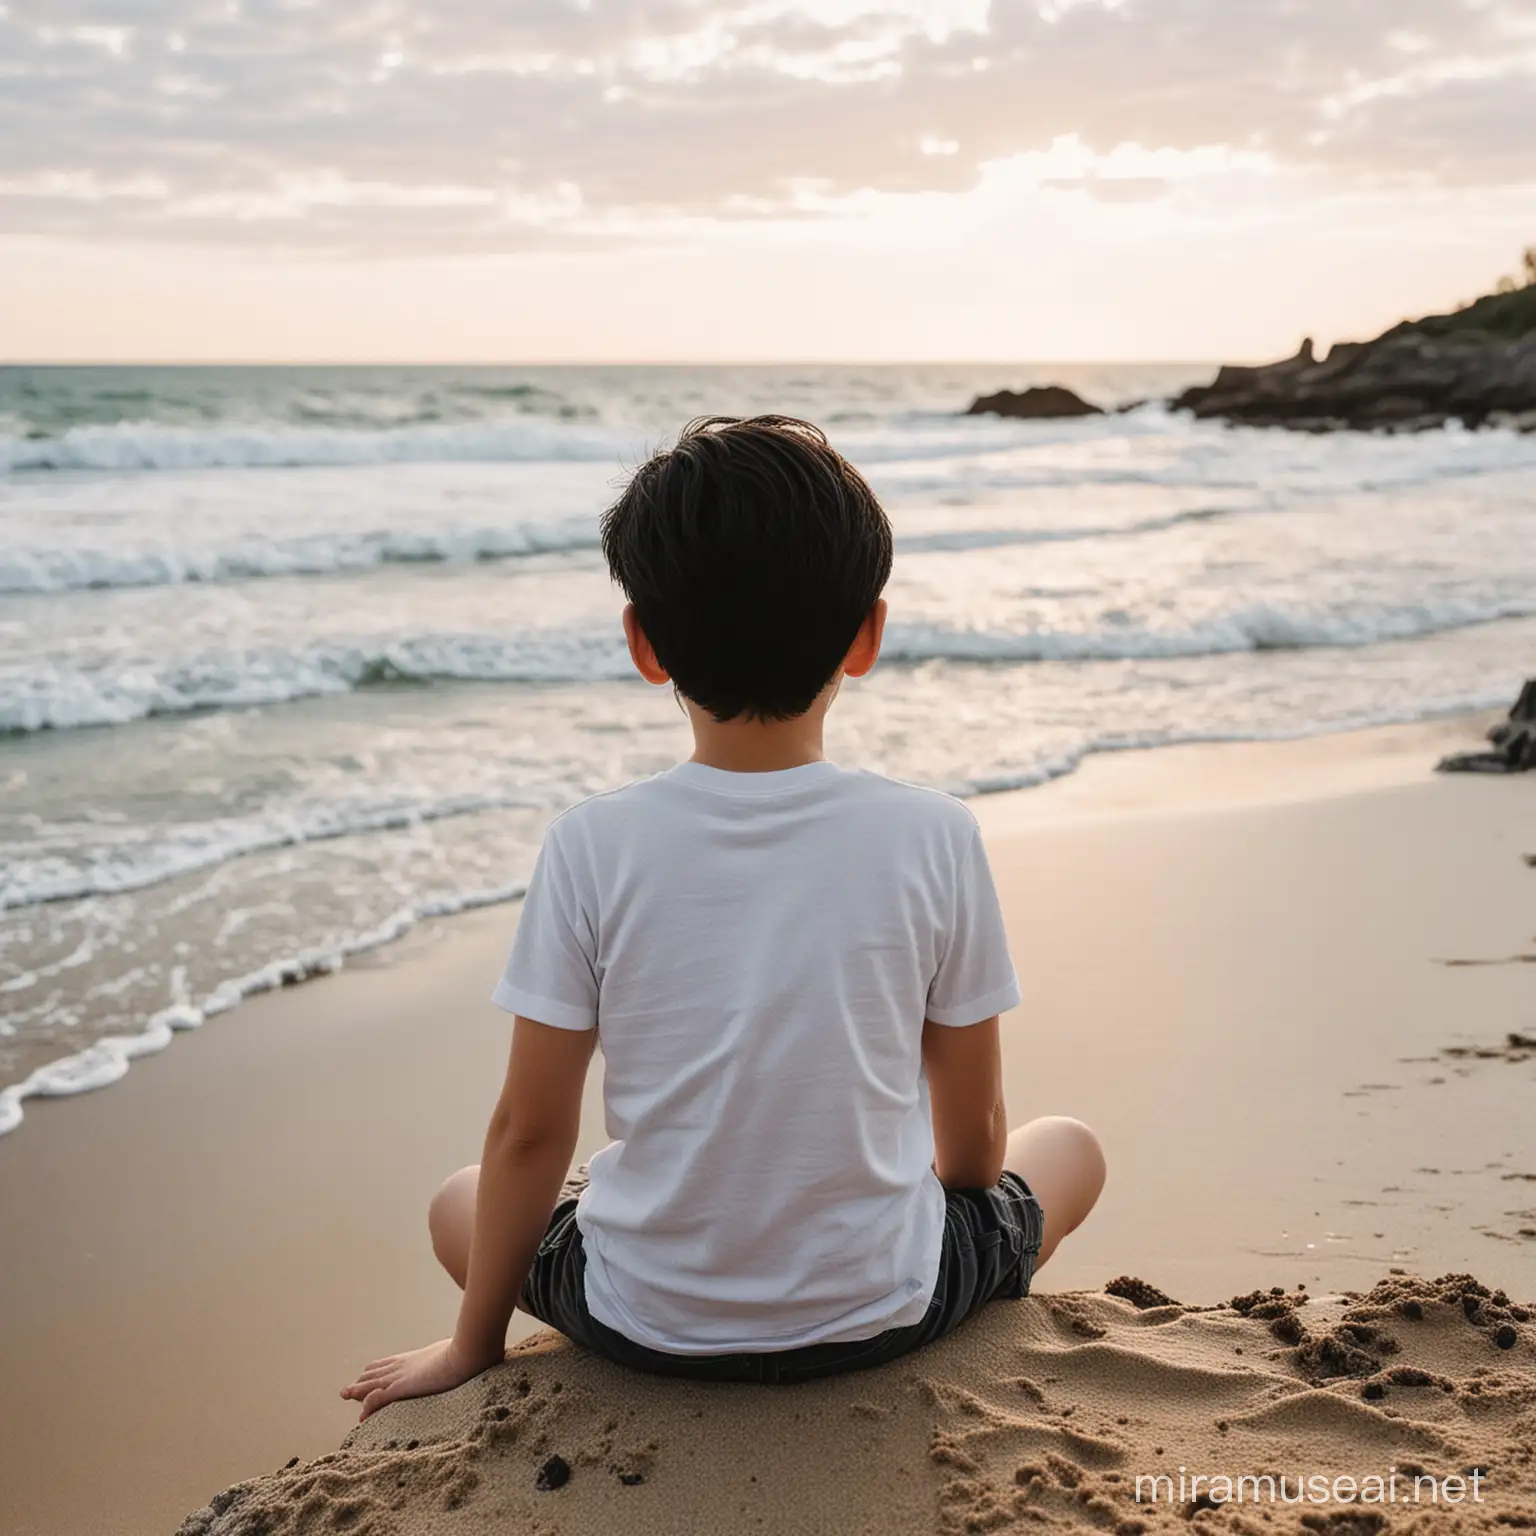 Contemplative Boy on Beach Gazing at Ocean Horizon